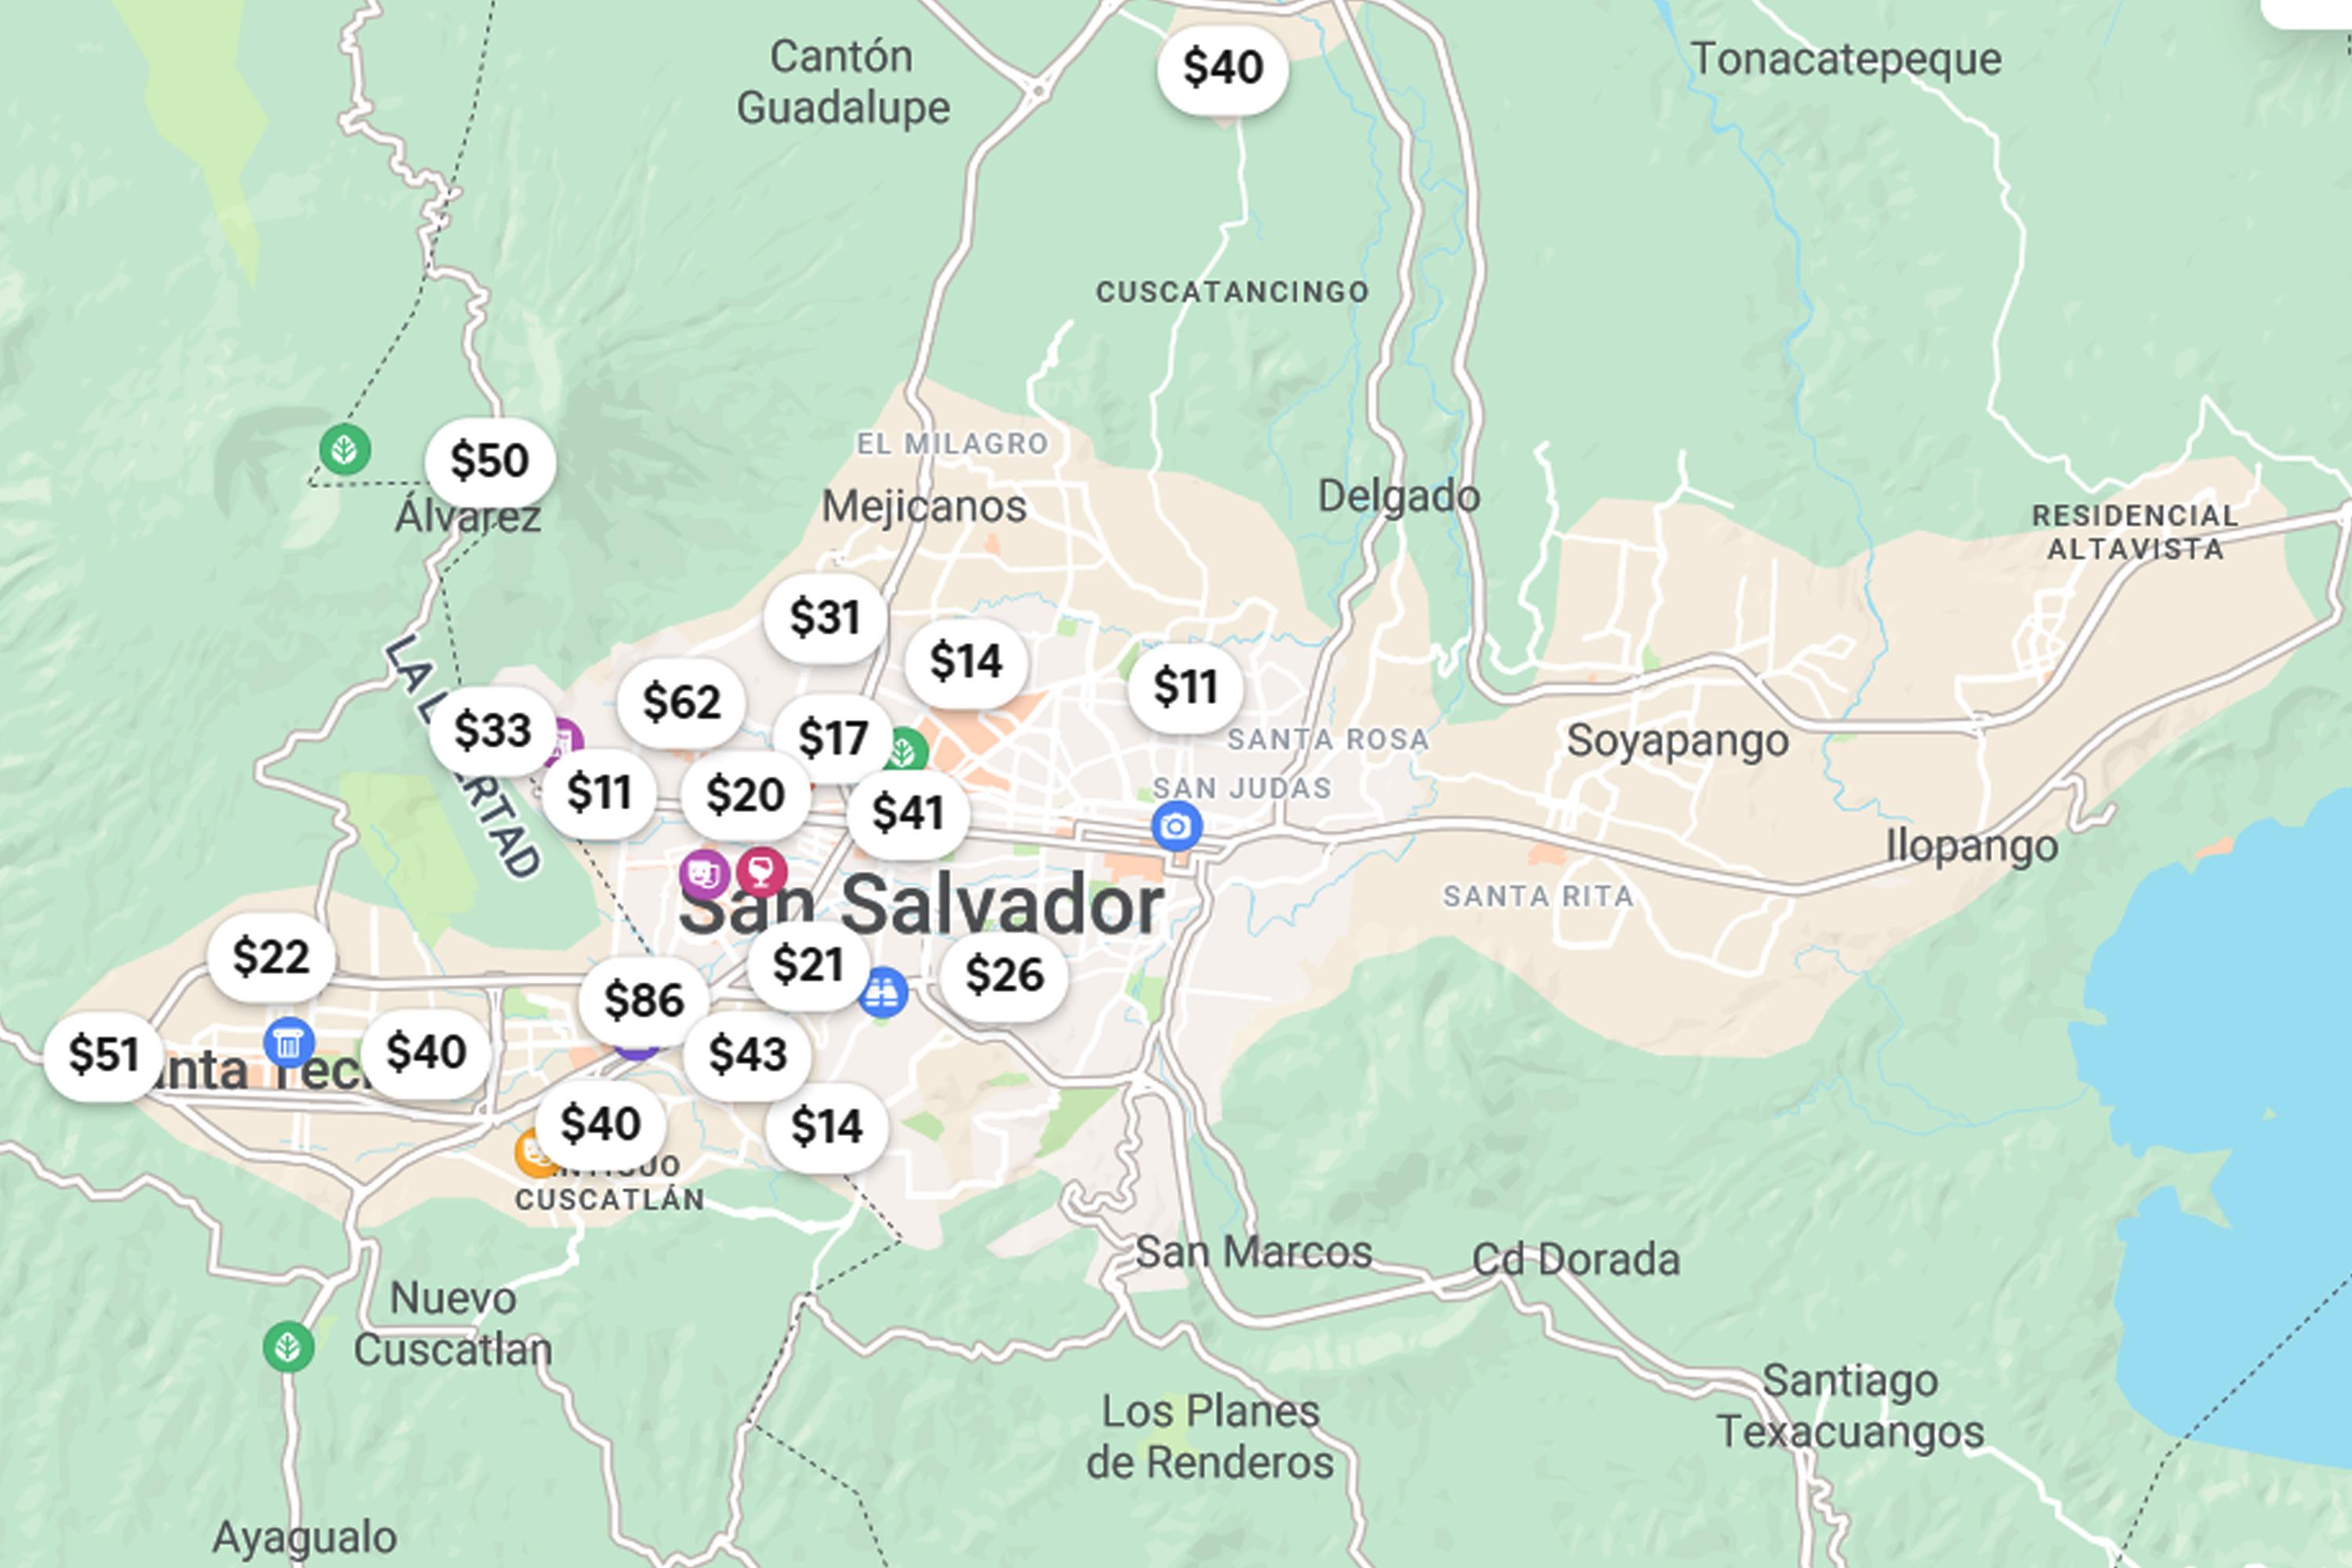 Vista ampliada de los alquileres disponibles en la plataforma Airnbn en el área metropolitana de San Salvador.